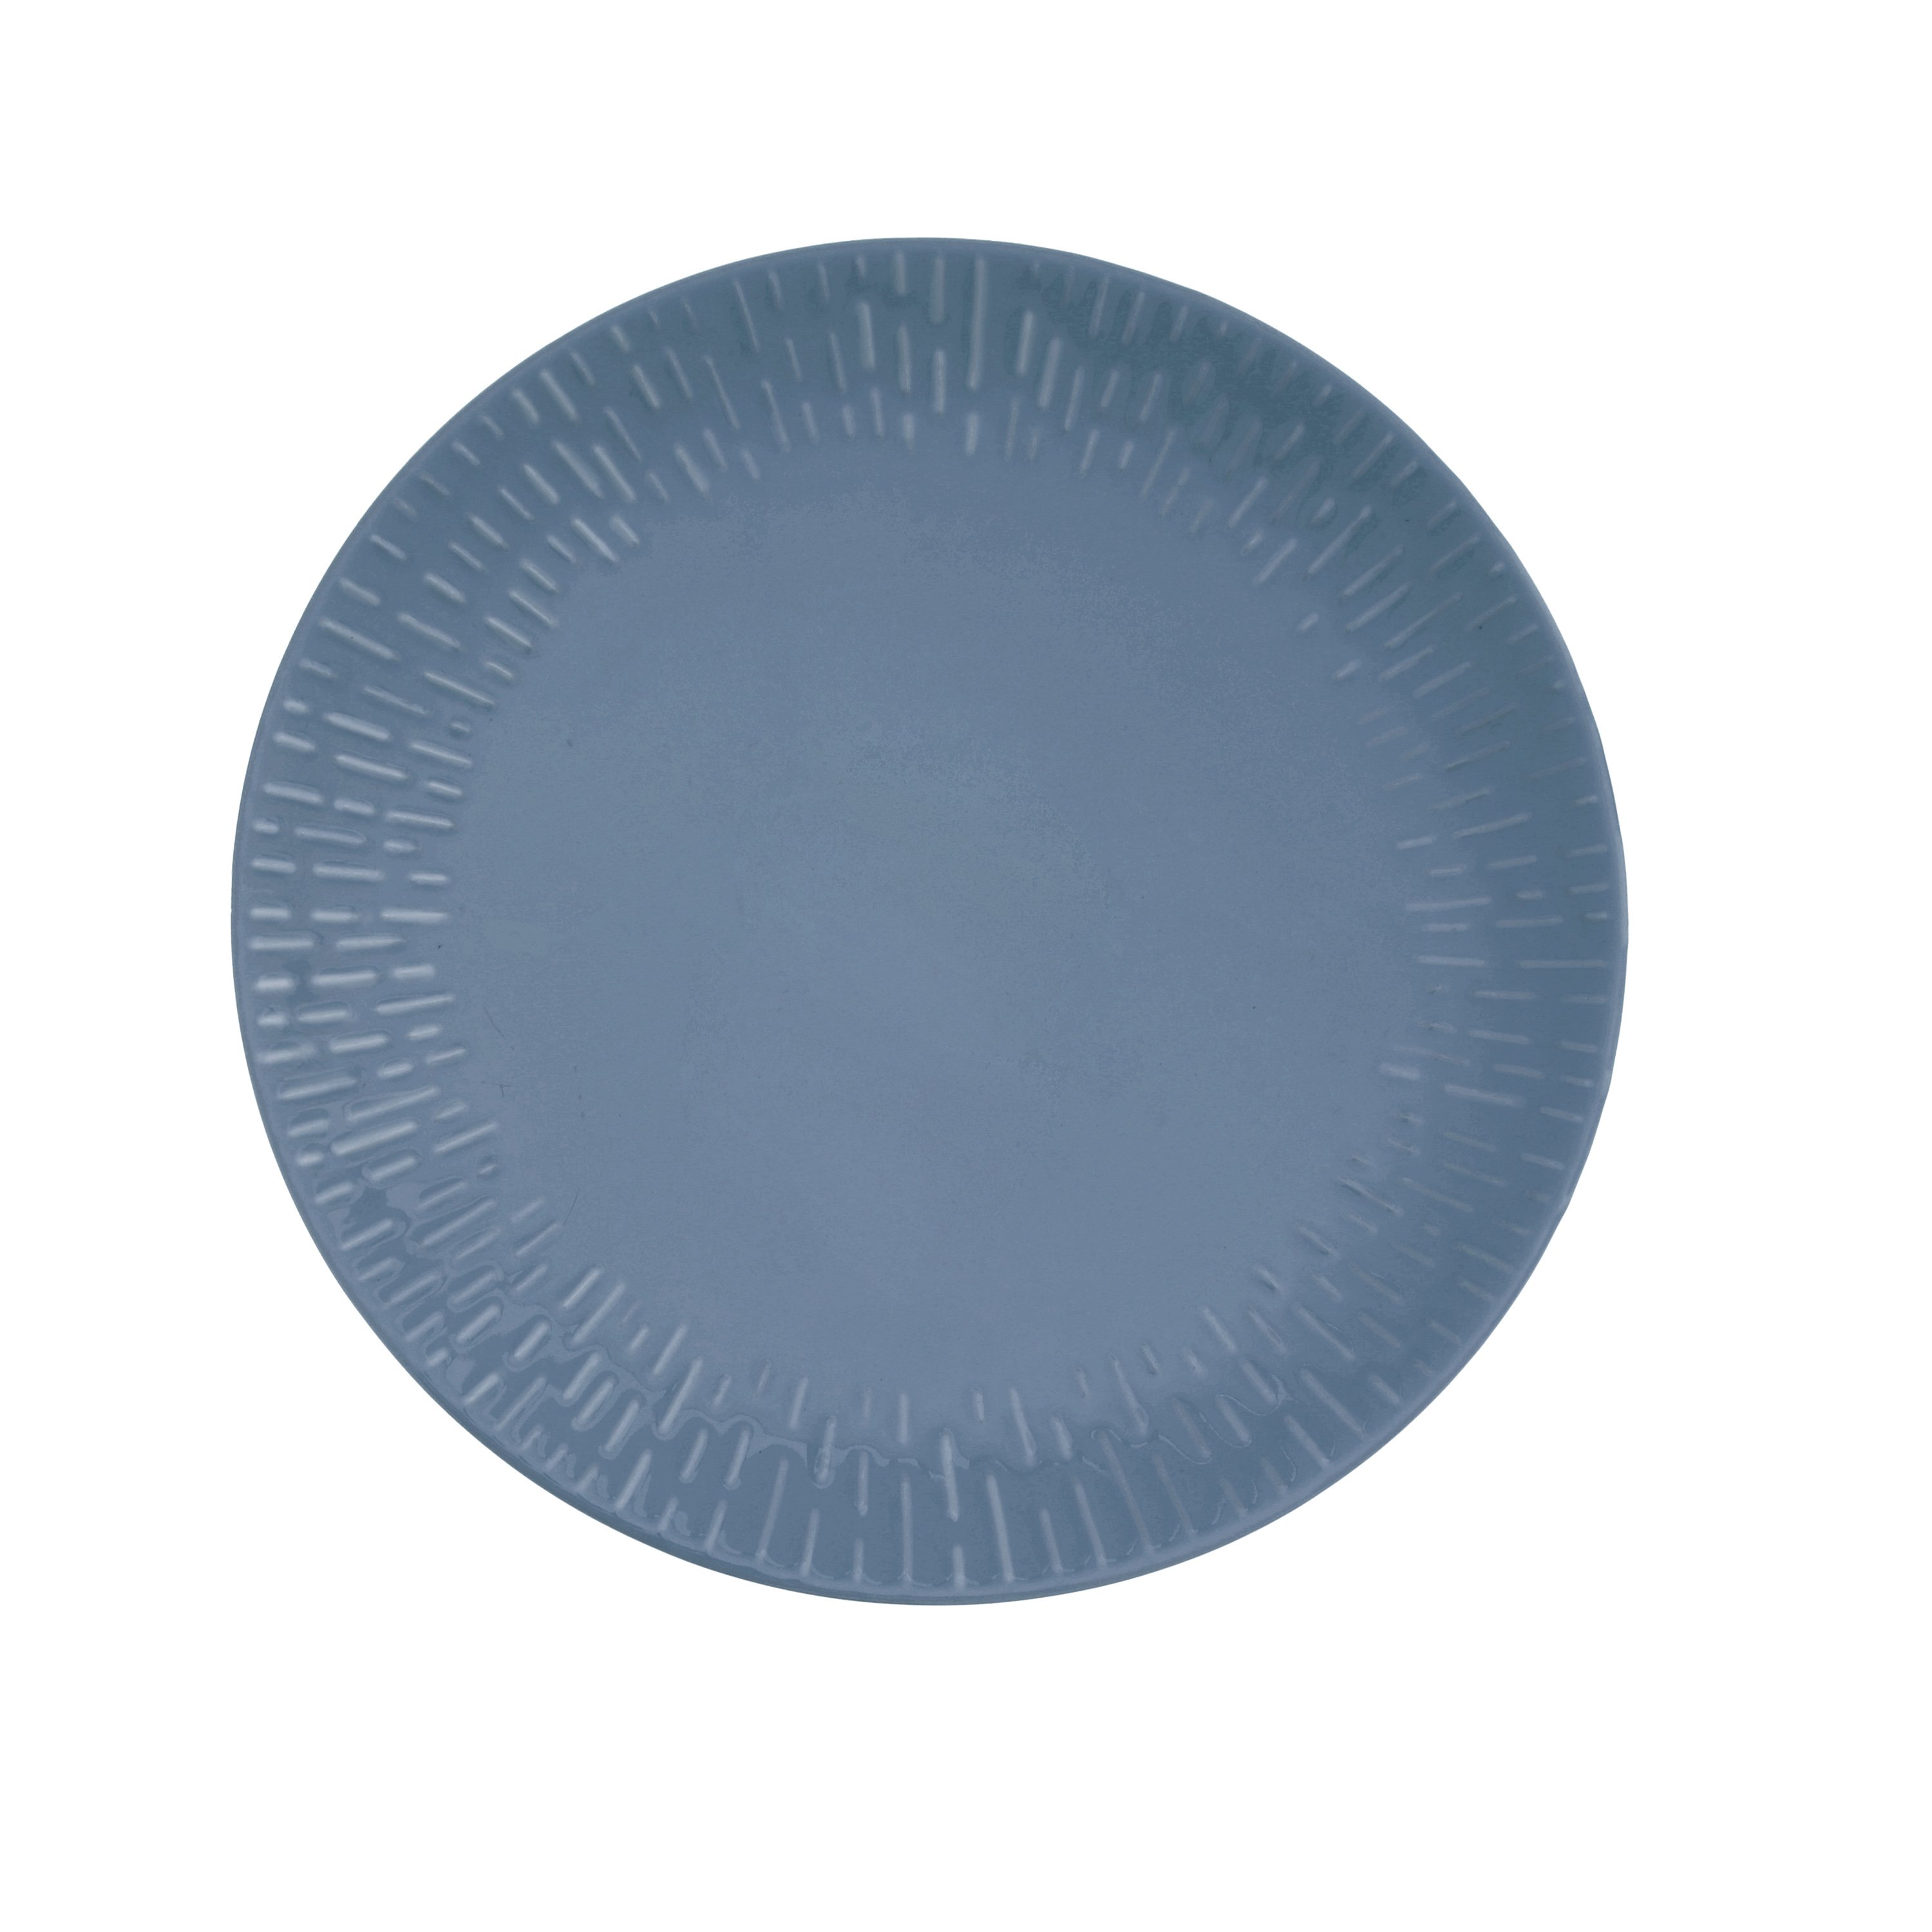 Aida - Life in Colour - Confetti - Blueberry dinner plate w/relief porcelain (13423) - Hjemme og kjøkken